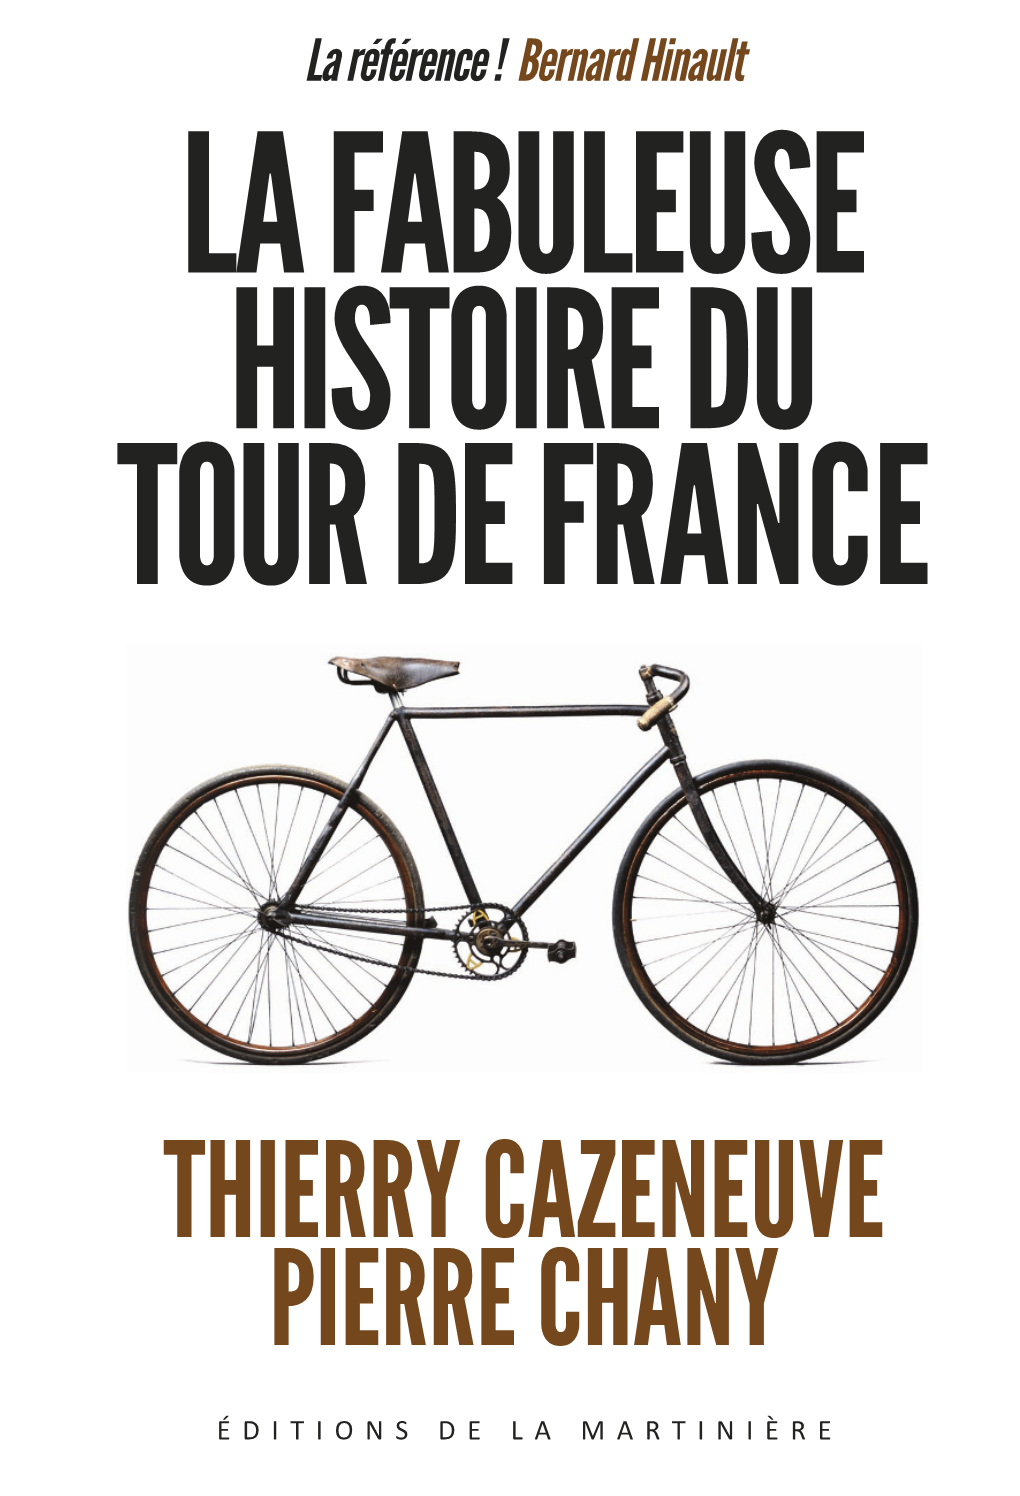 La Référence ! Bernard Hinault DU TOUR DE FRANCE Voici L’Ouvrage De Référence Sur Le Vélo Et Sur Le Tour De France